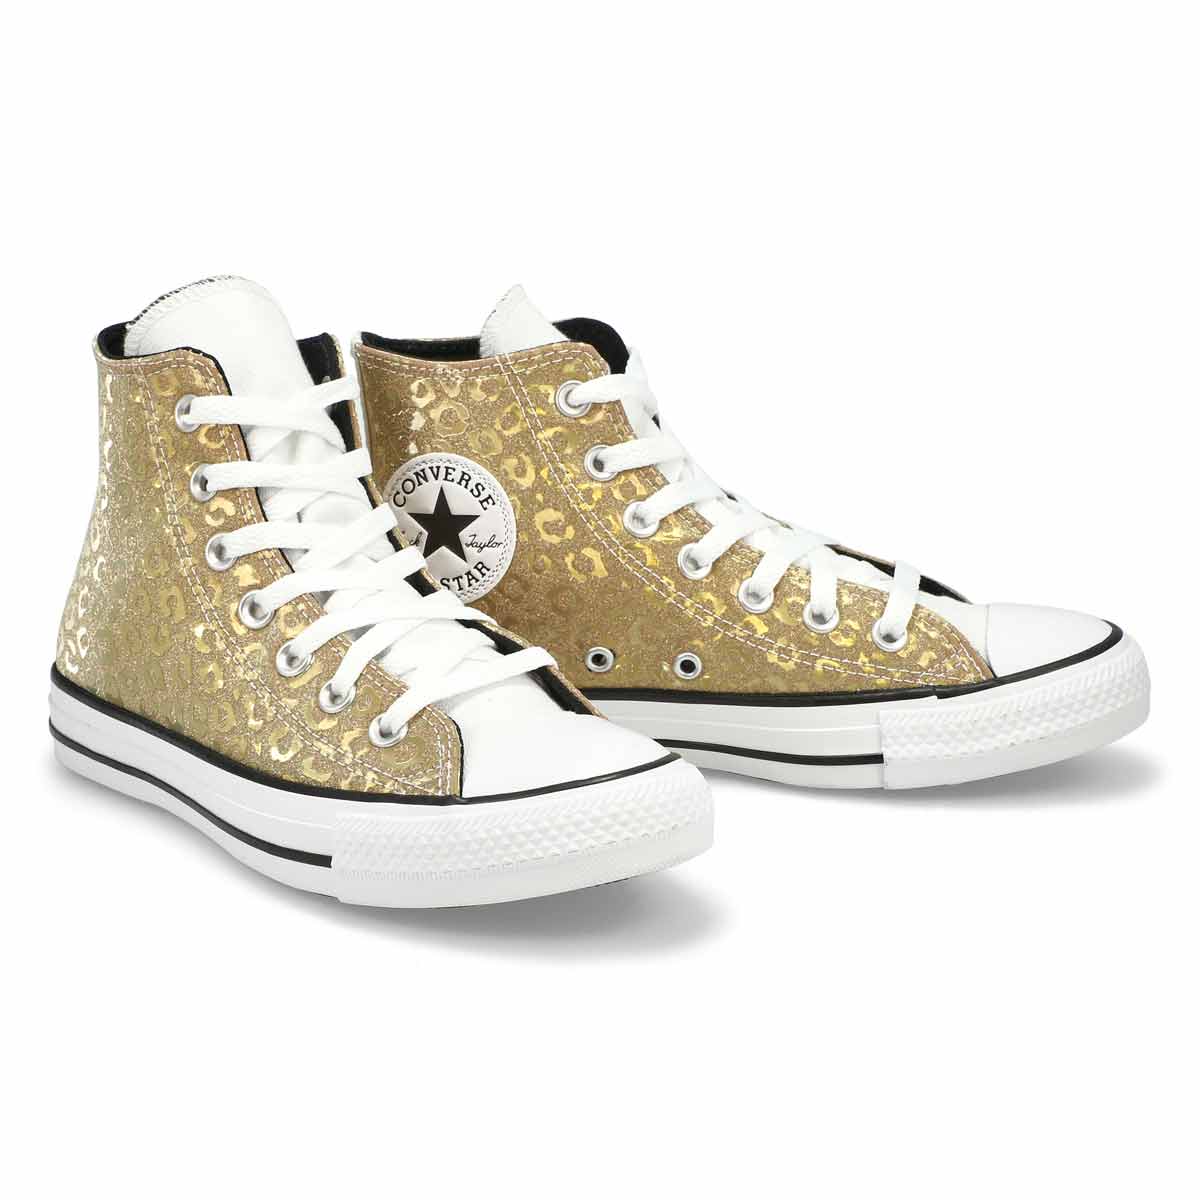 Women's All Star Leopard Glitter Hi Top Sneaker